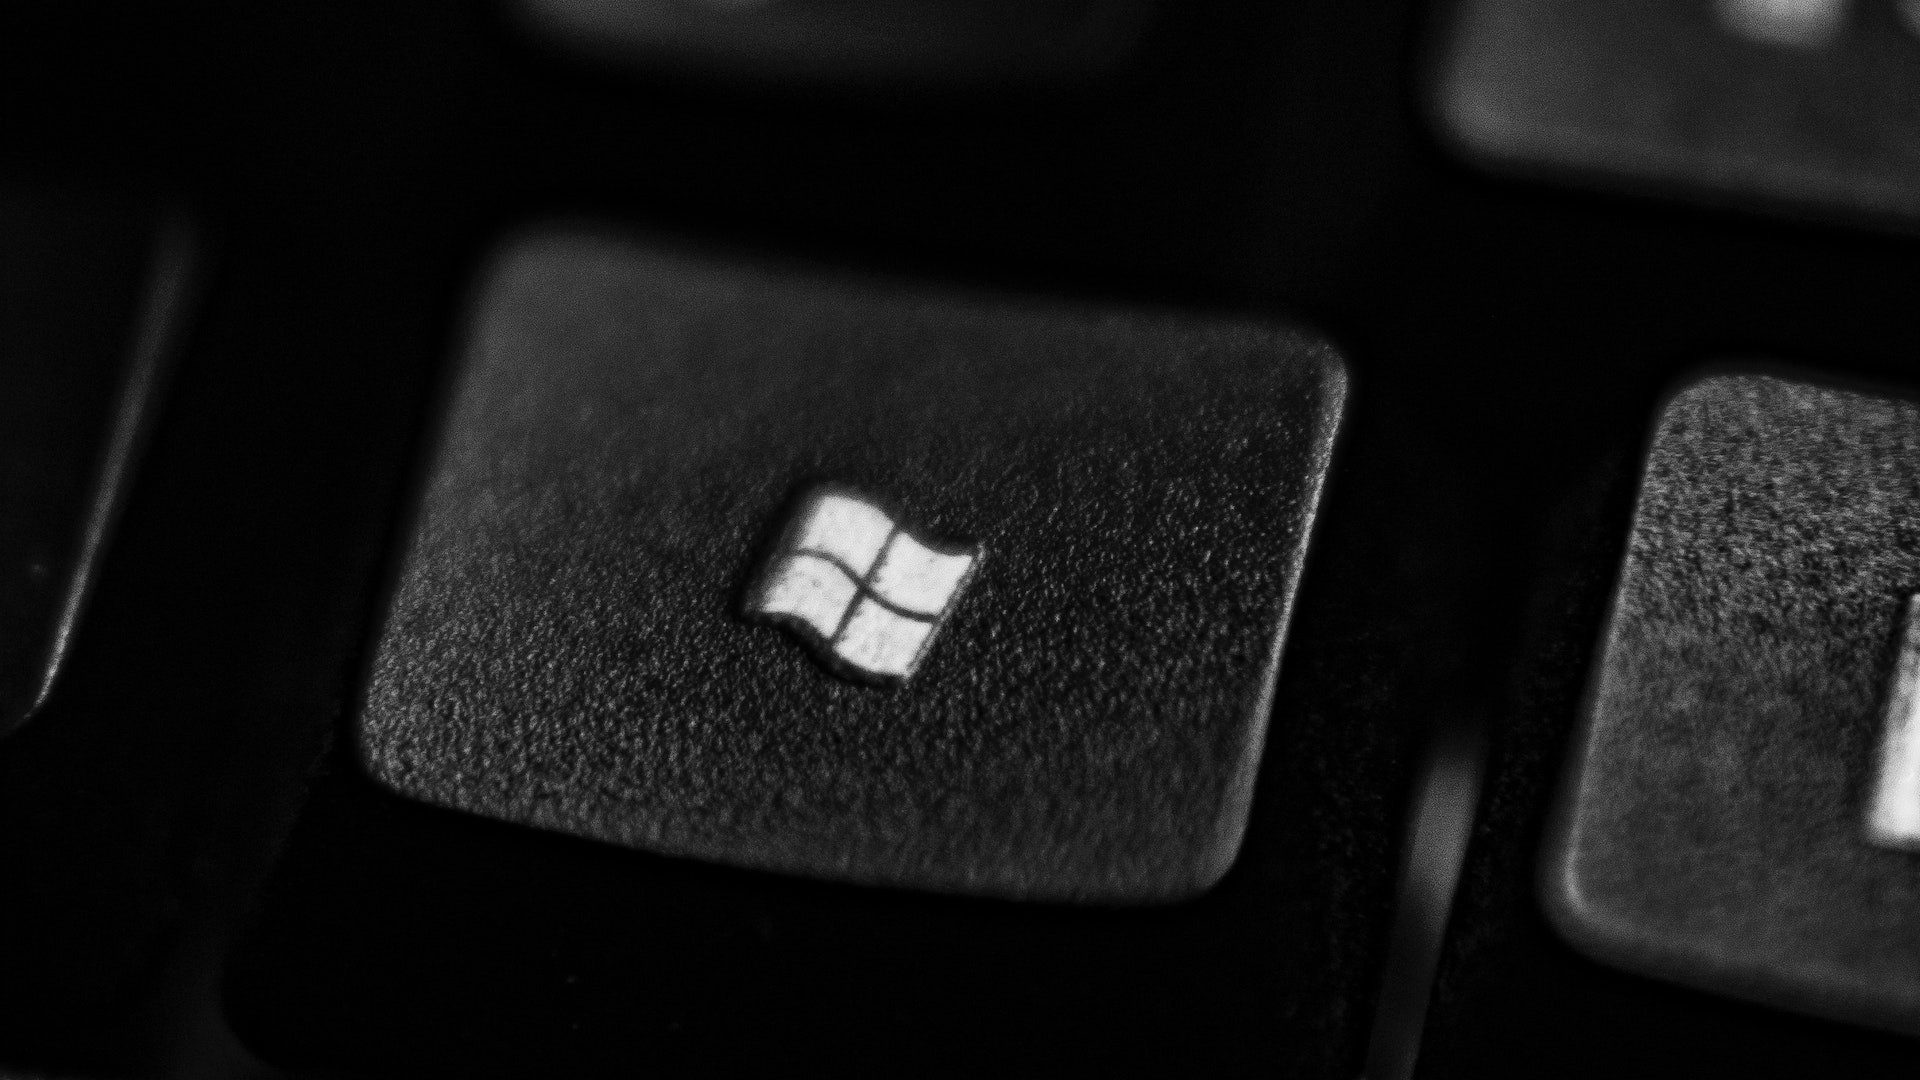 Nahaufnahme der Microsoft Windows-Taste auf einer Tastatur